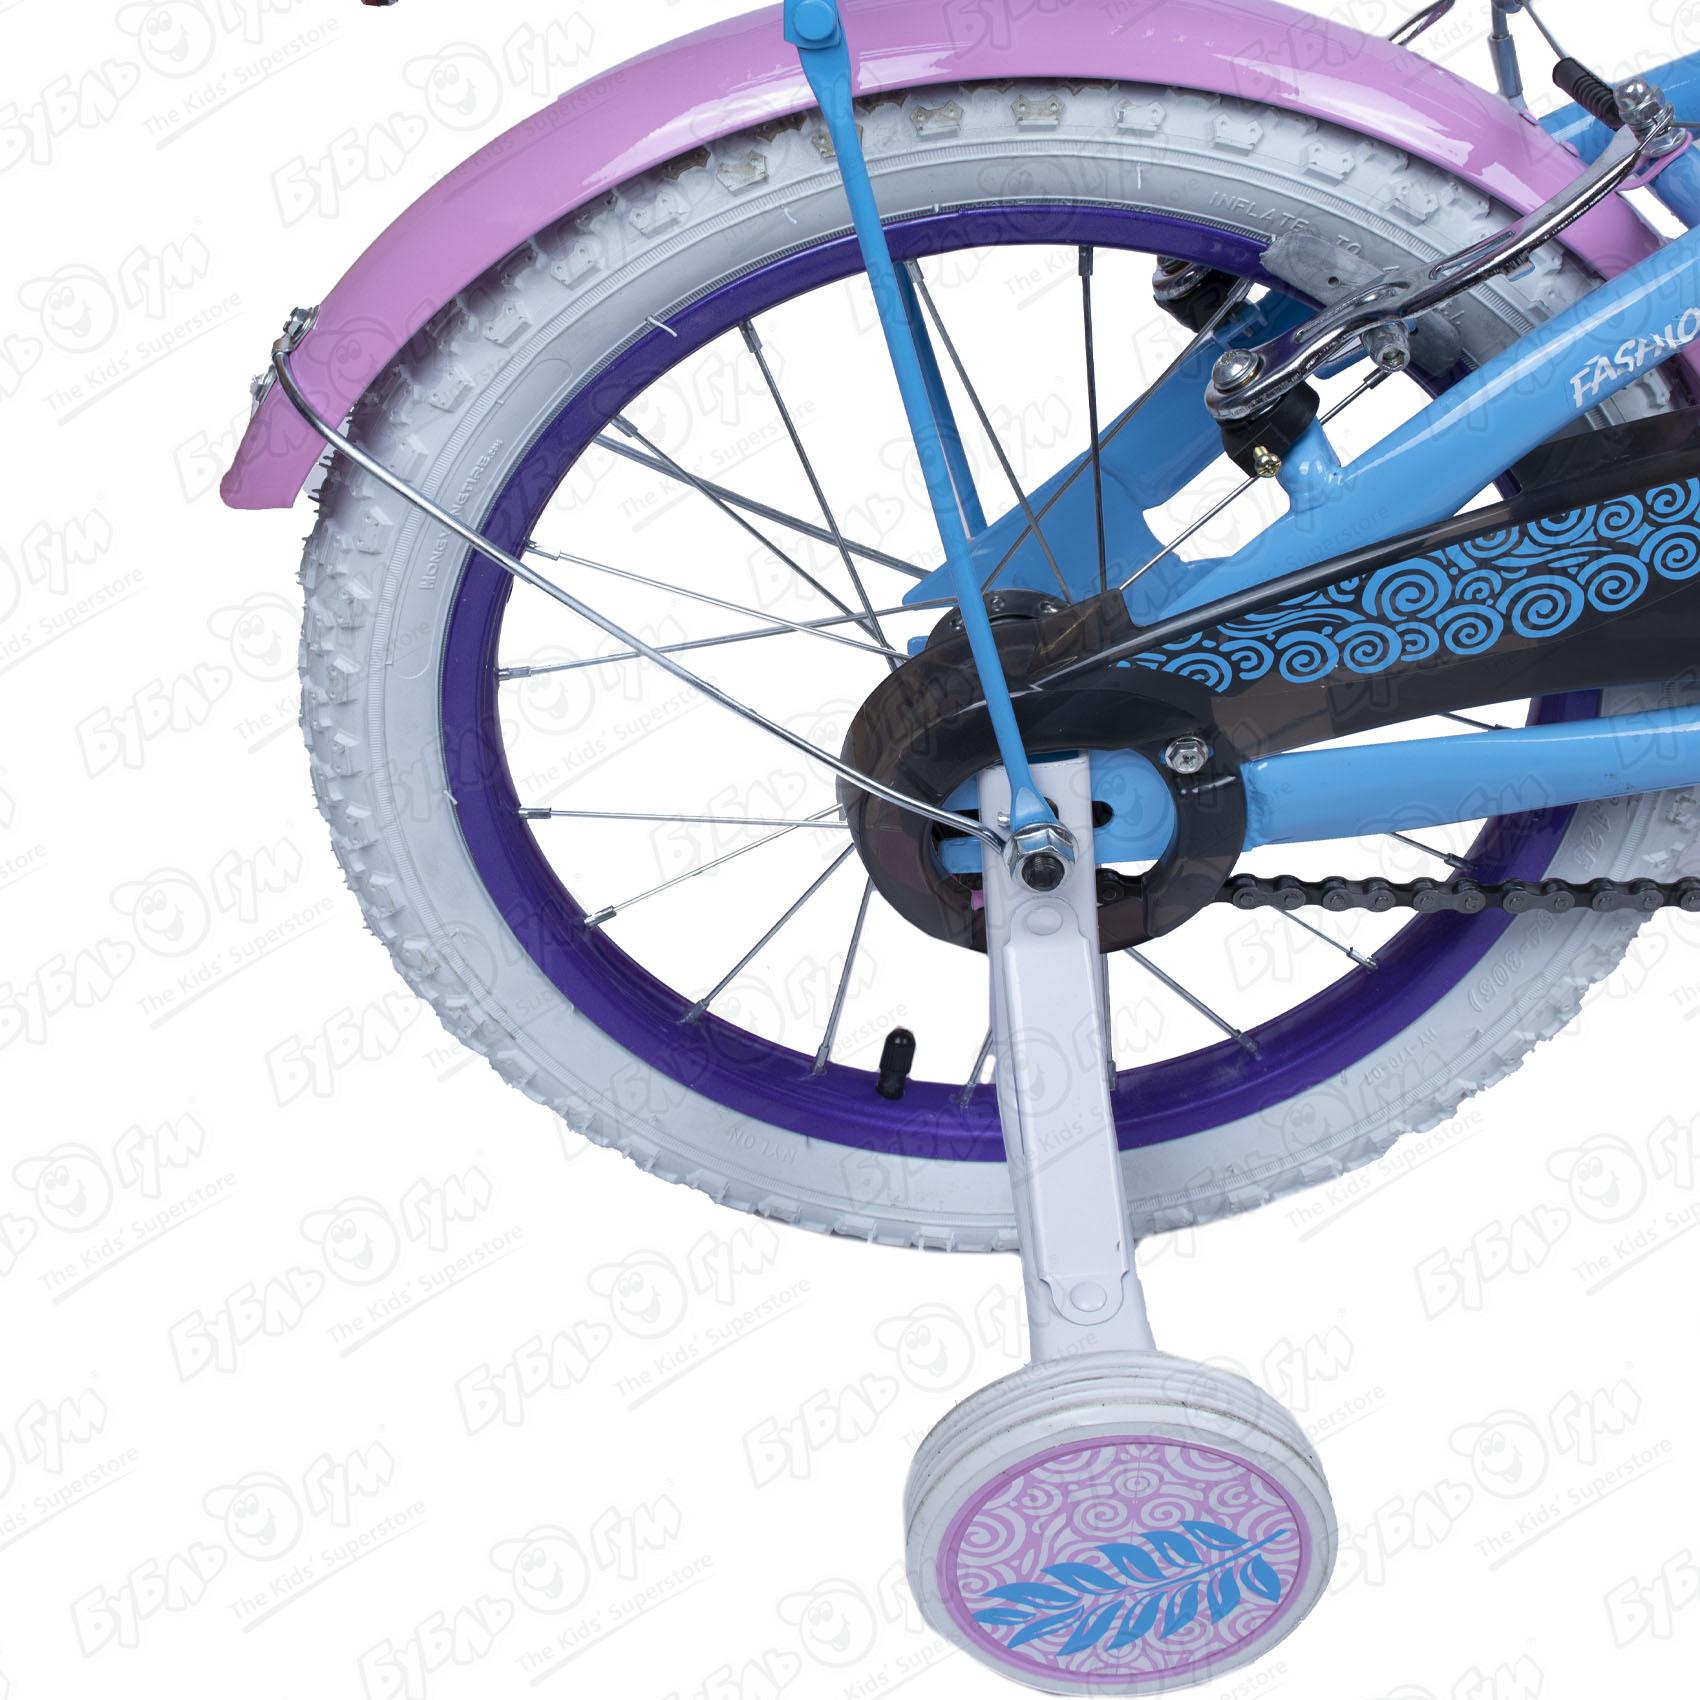 Велосипед Champ Pro детский G16 розово-фиолетовый, цвет голубой - фото 8